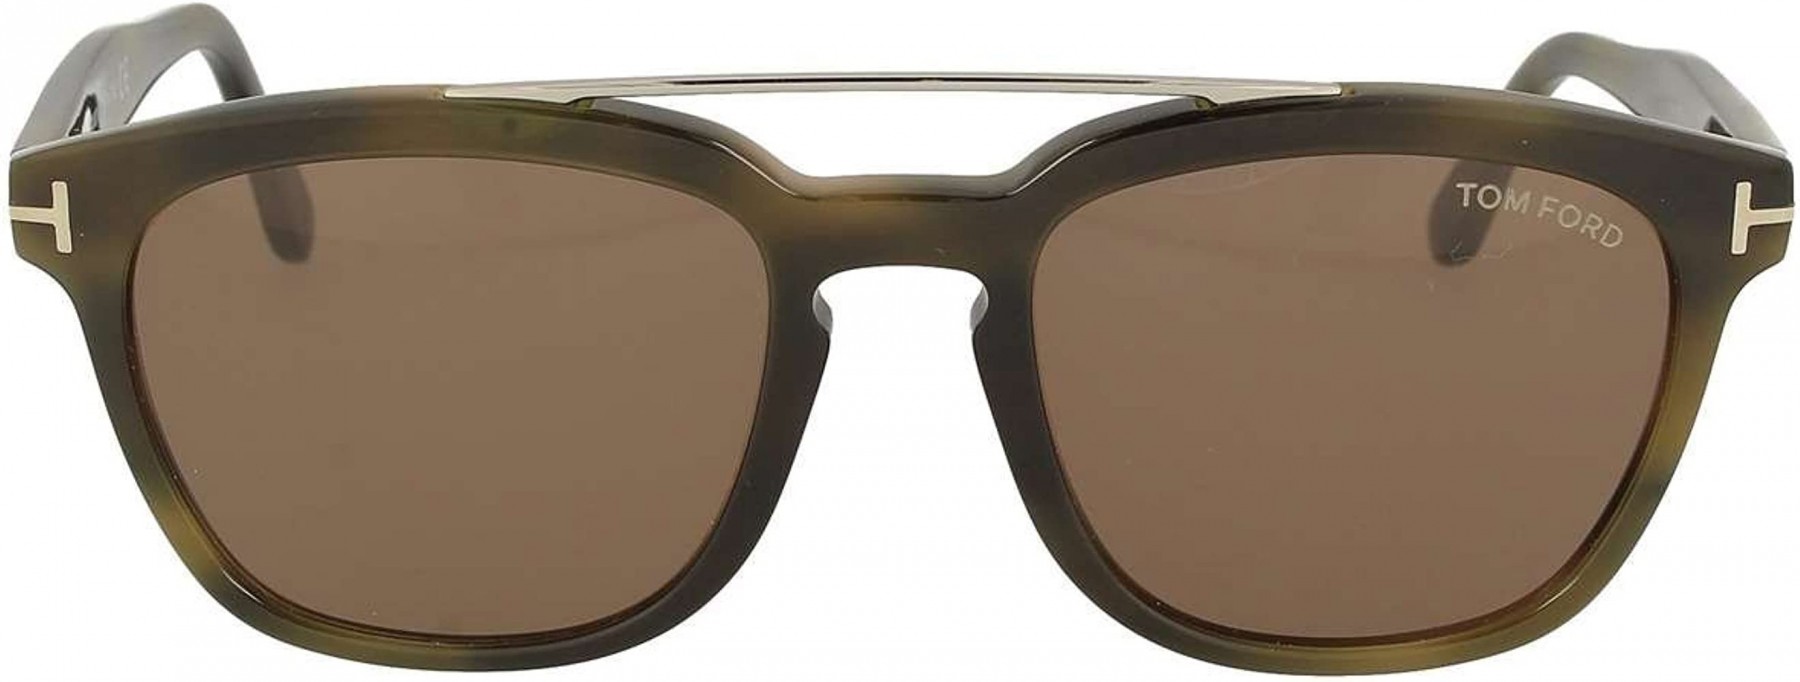 Tom Ford Holt 516 55E - Óculos de Sol